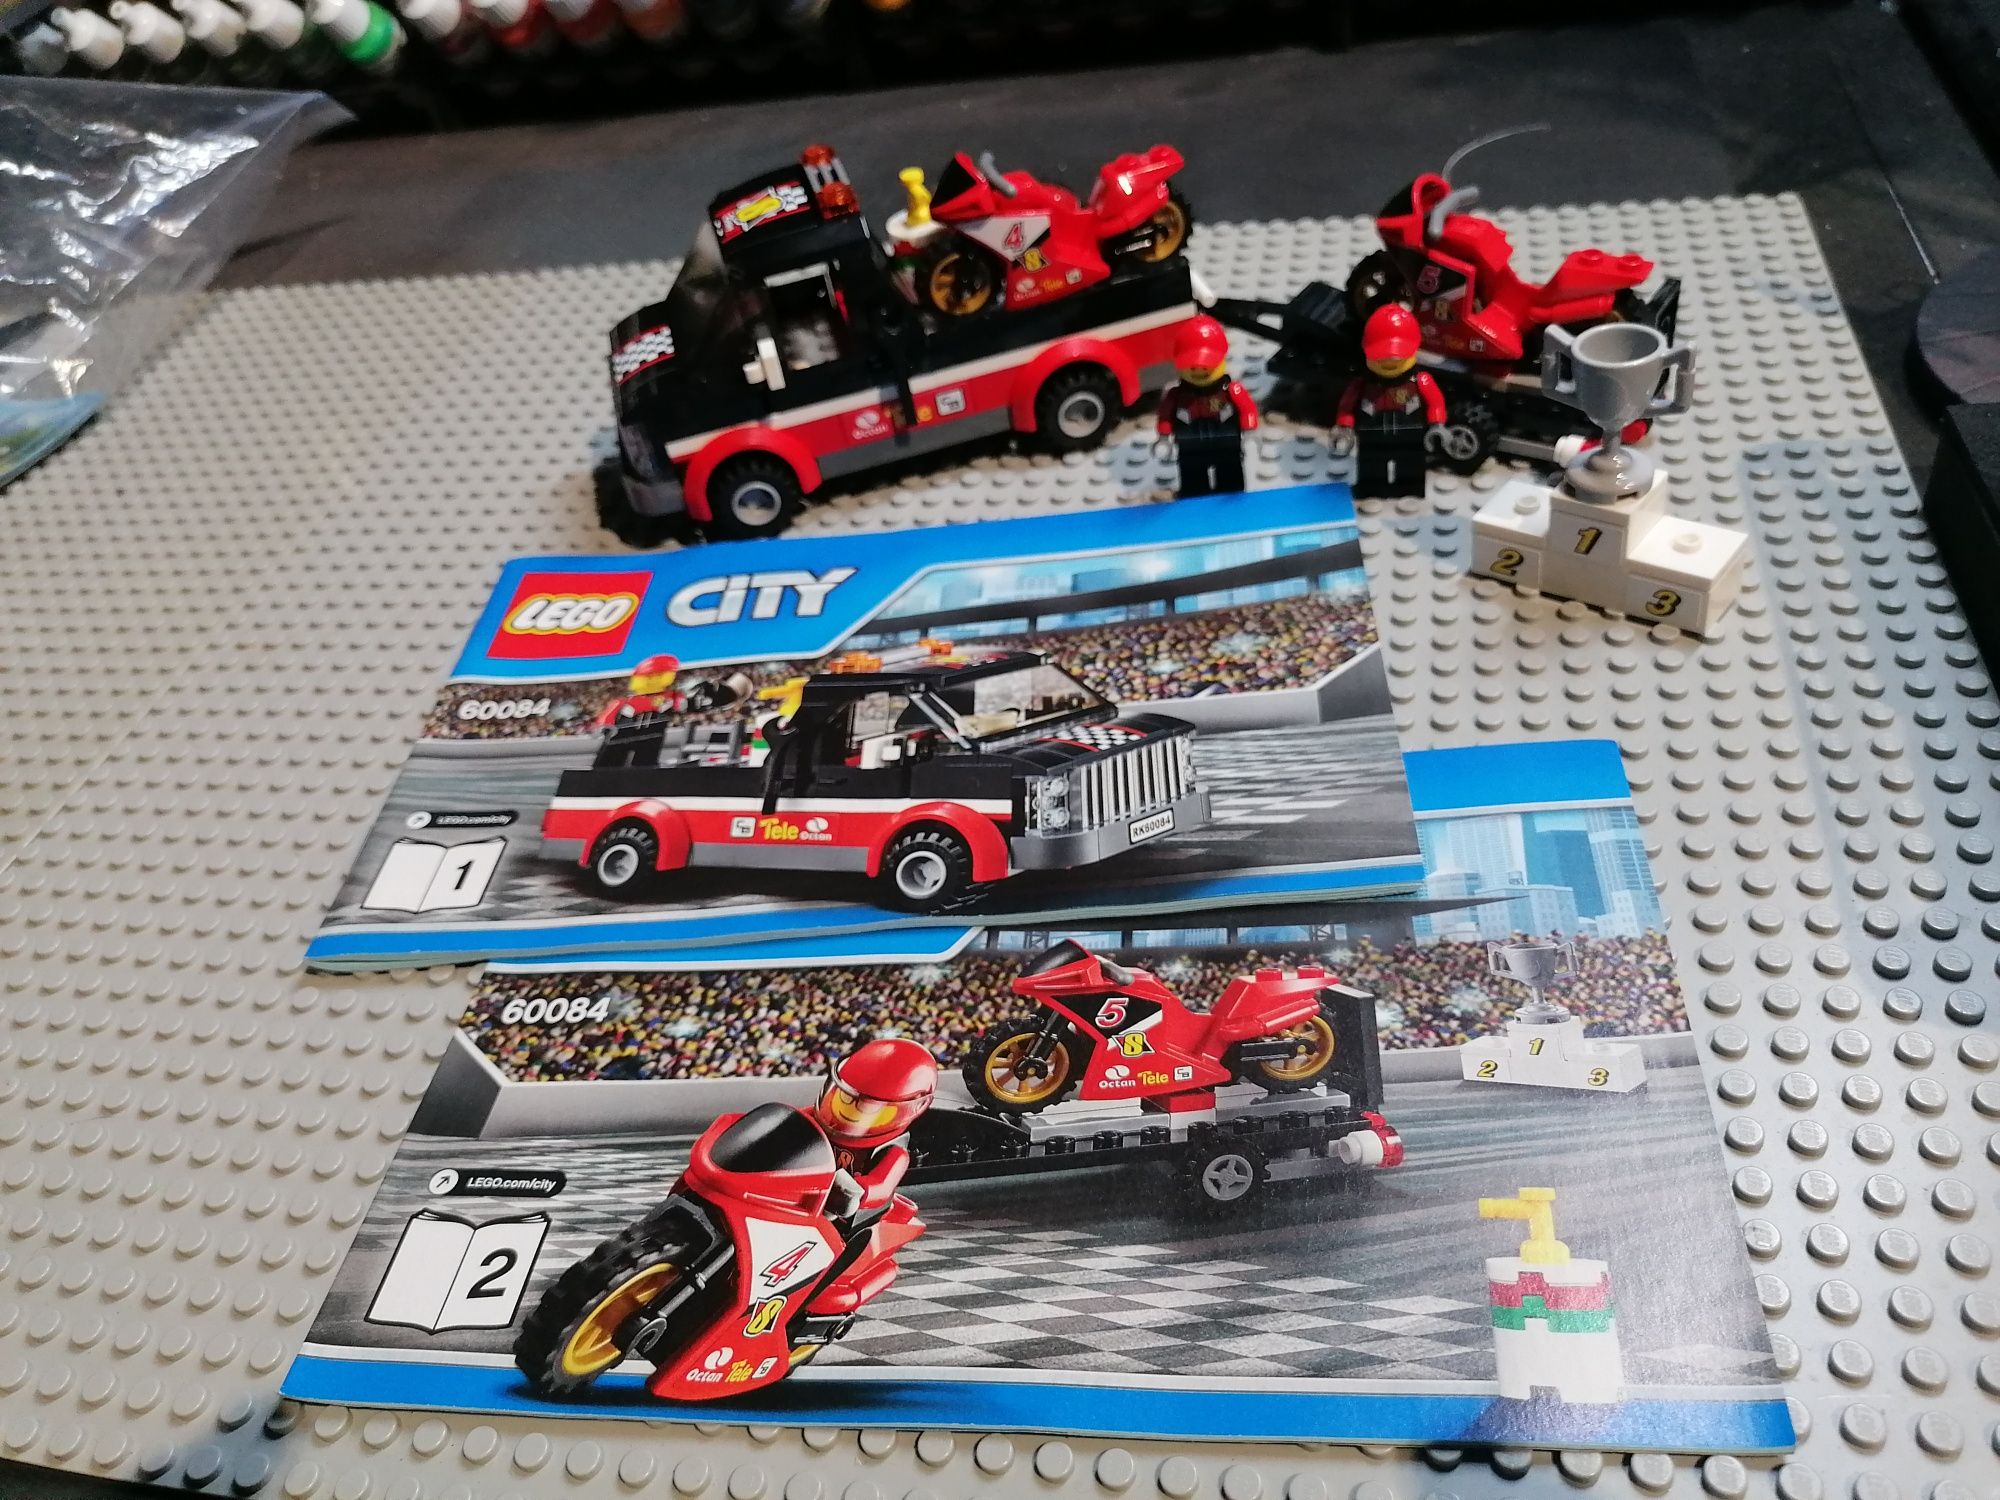 Lego city 60144, 7732, 3177, 60058, 60084